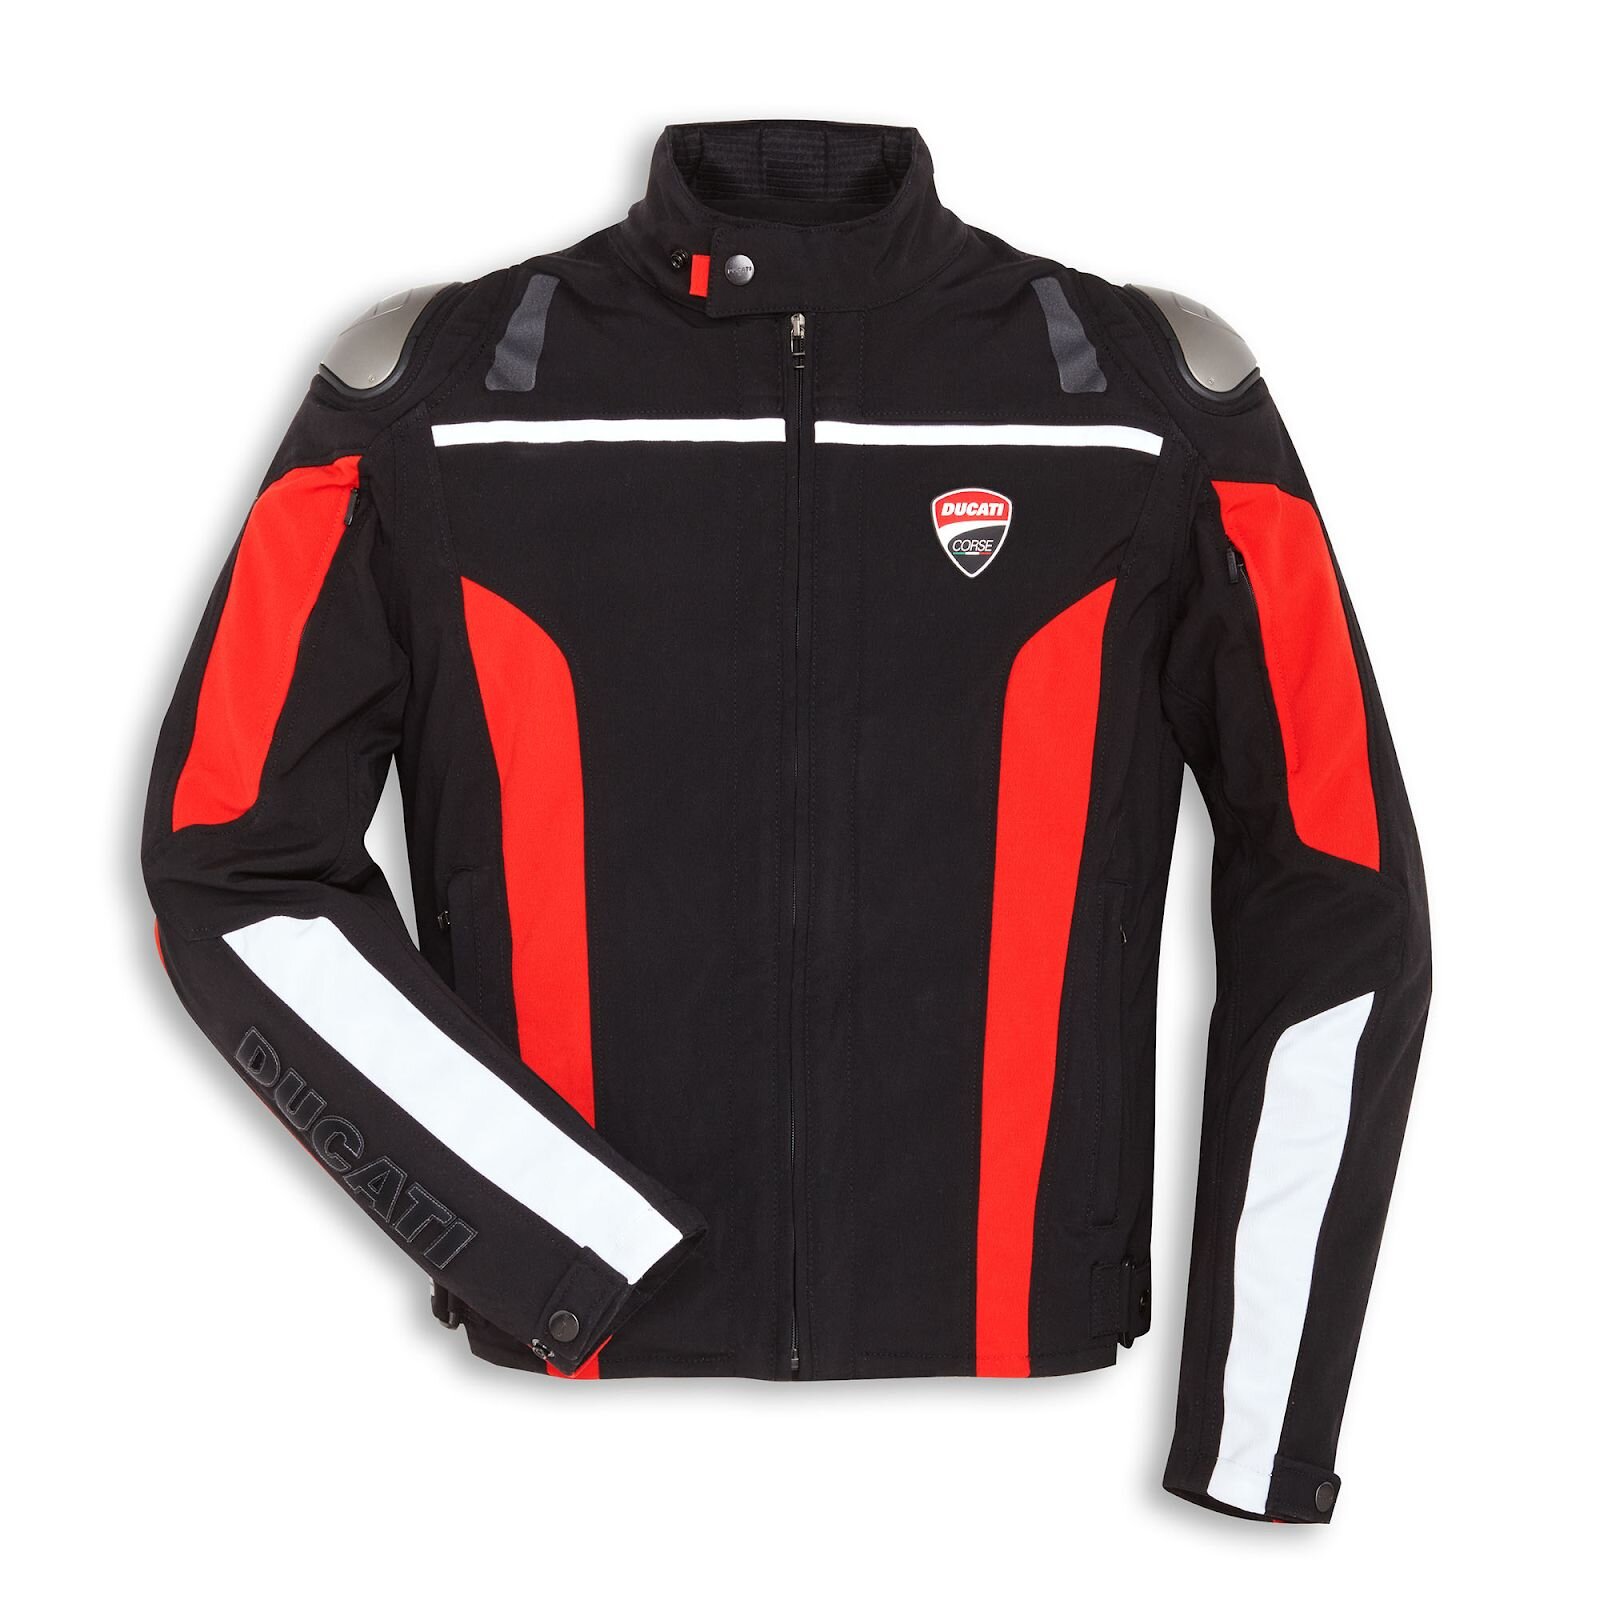 Ducati Corse tex C4 chất lượng tốt, màu sắc thời trang